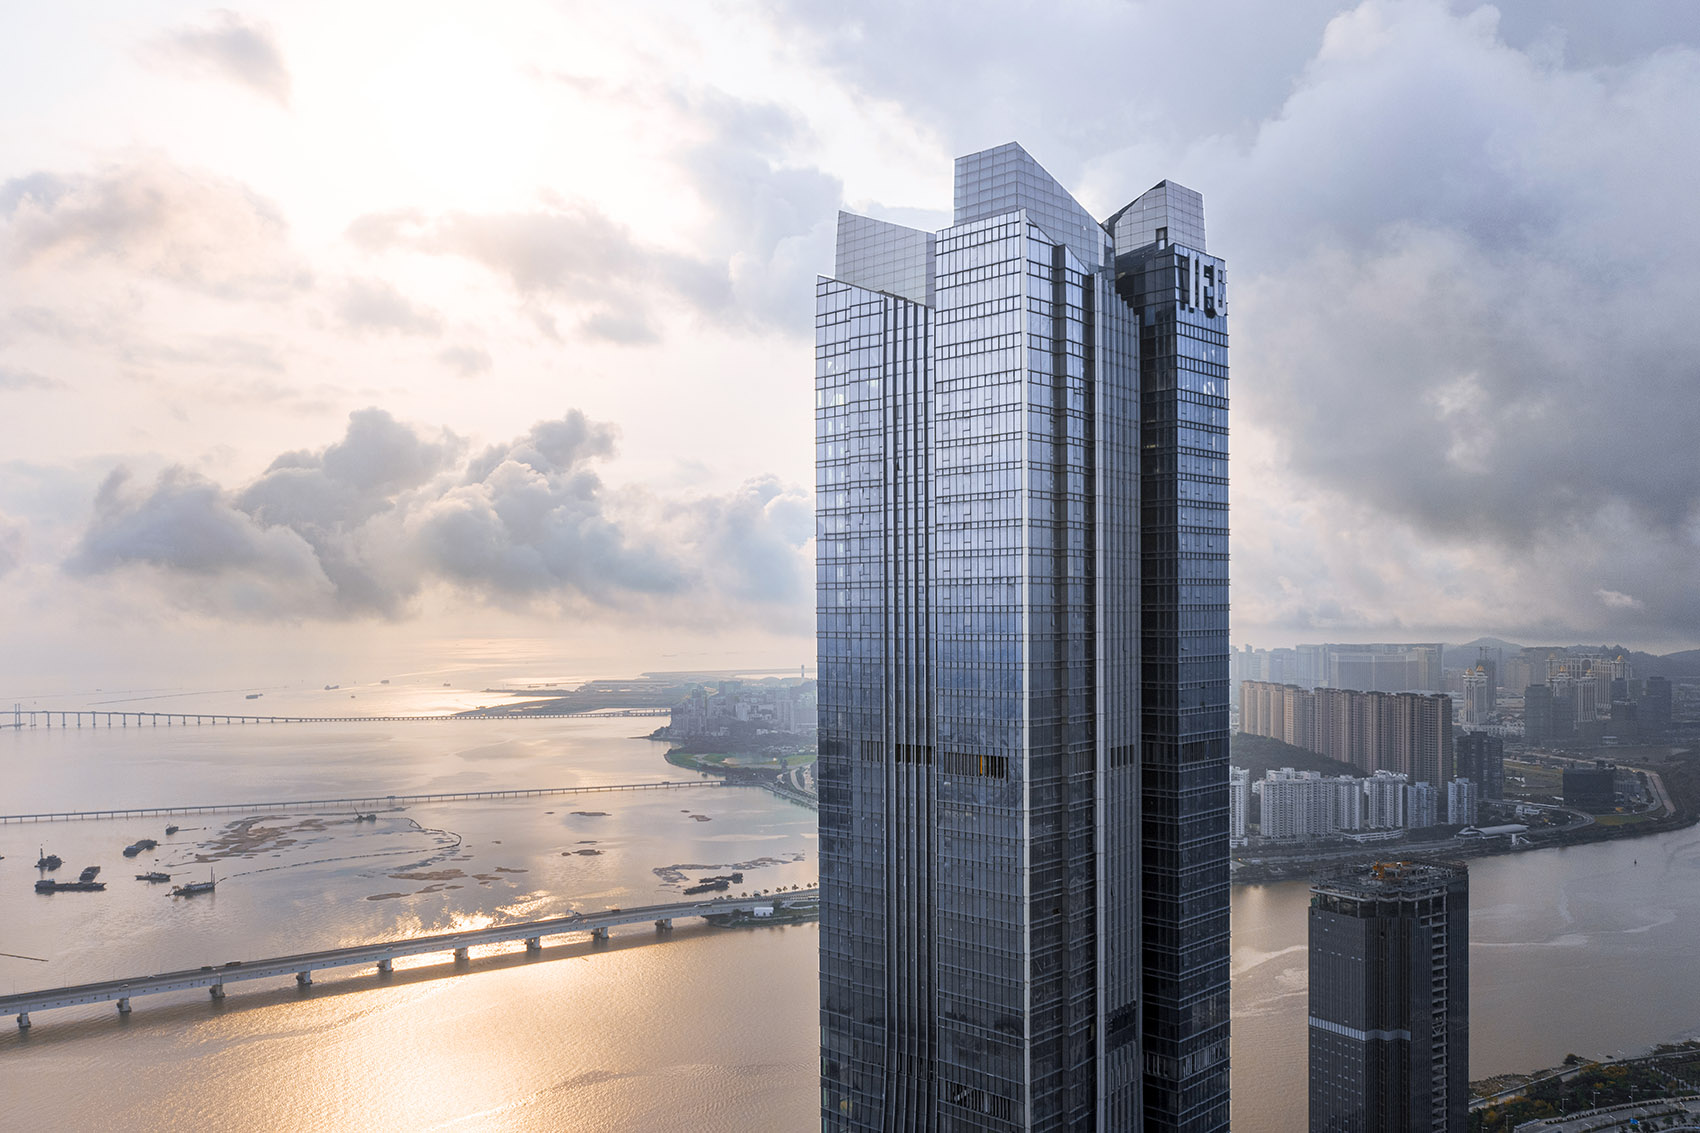 横琴国际金融中心，珠海/珠澳第一高楼，以蛟龙出海打造中国新力量-64